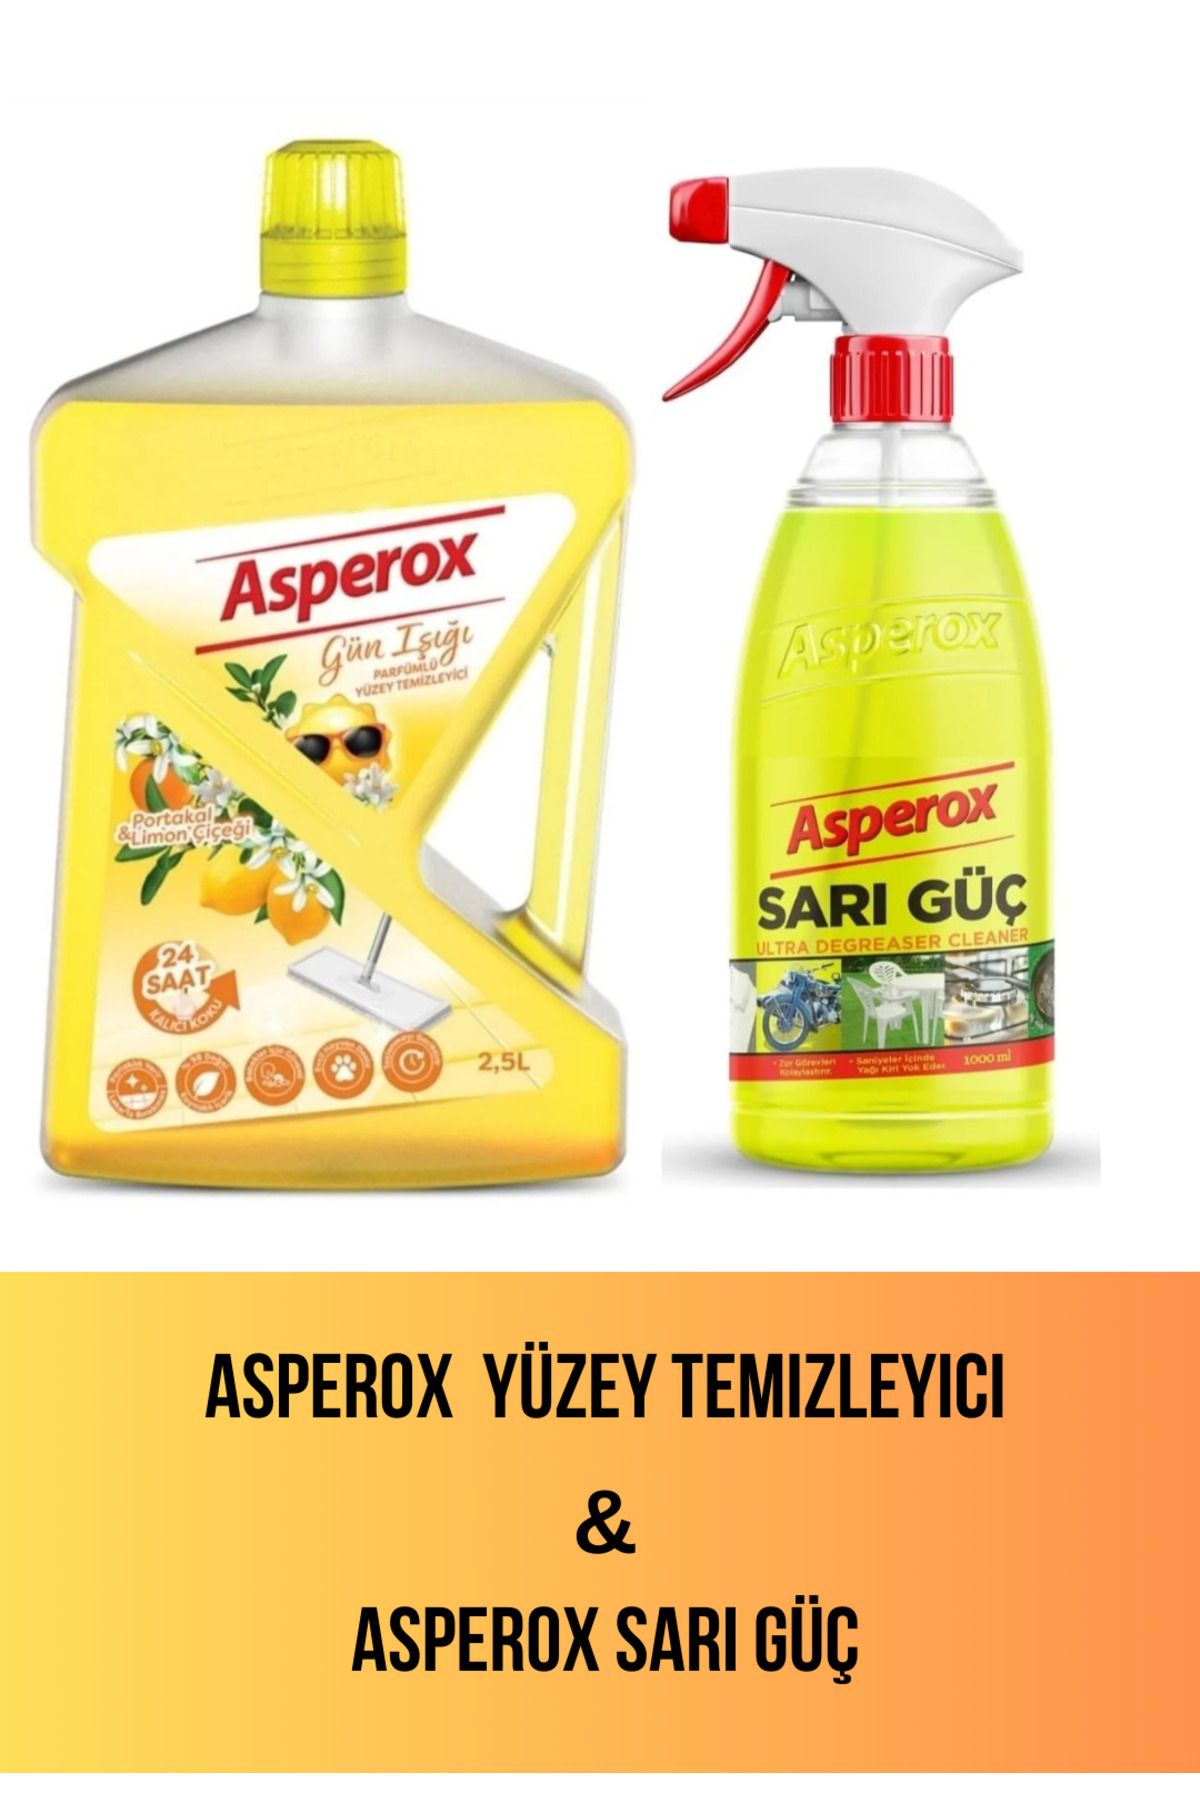 ASPEROX Gün Işığı Yüzey Temizleyici 2.5 L & Asperox Sarı Güç 1000 ml